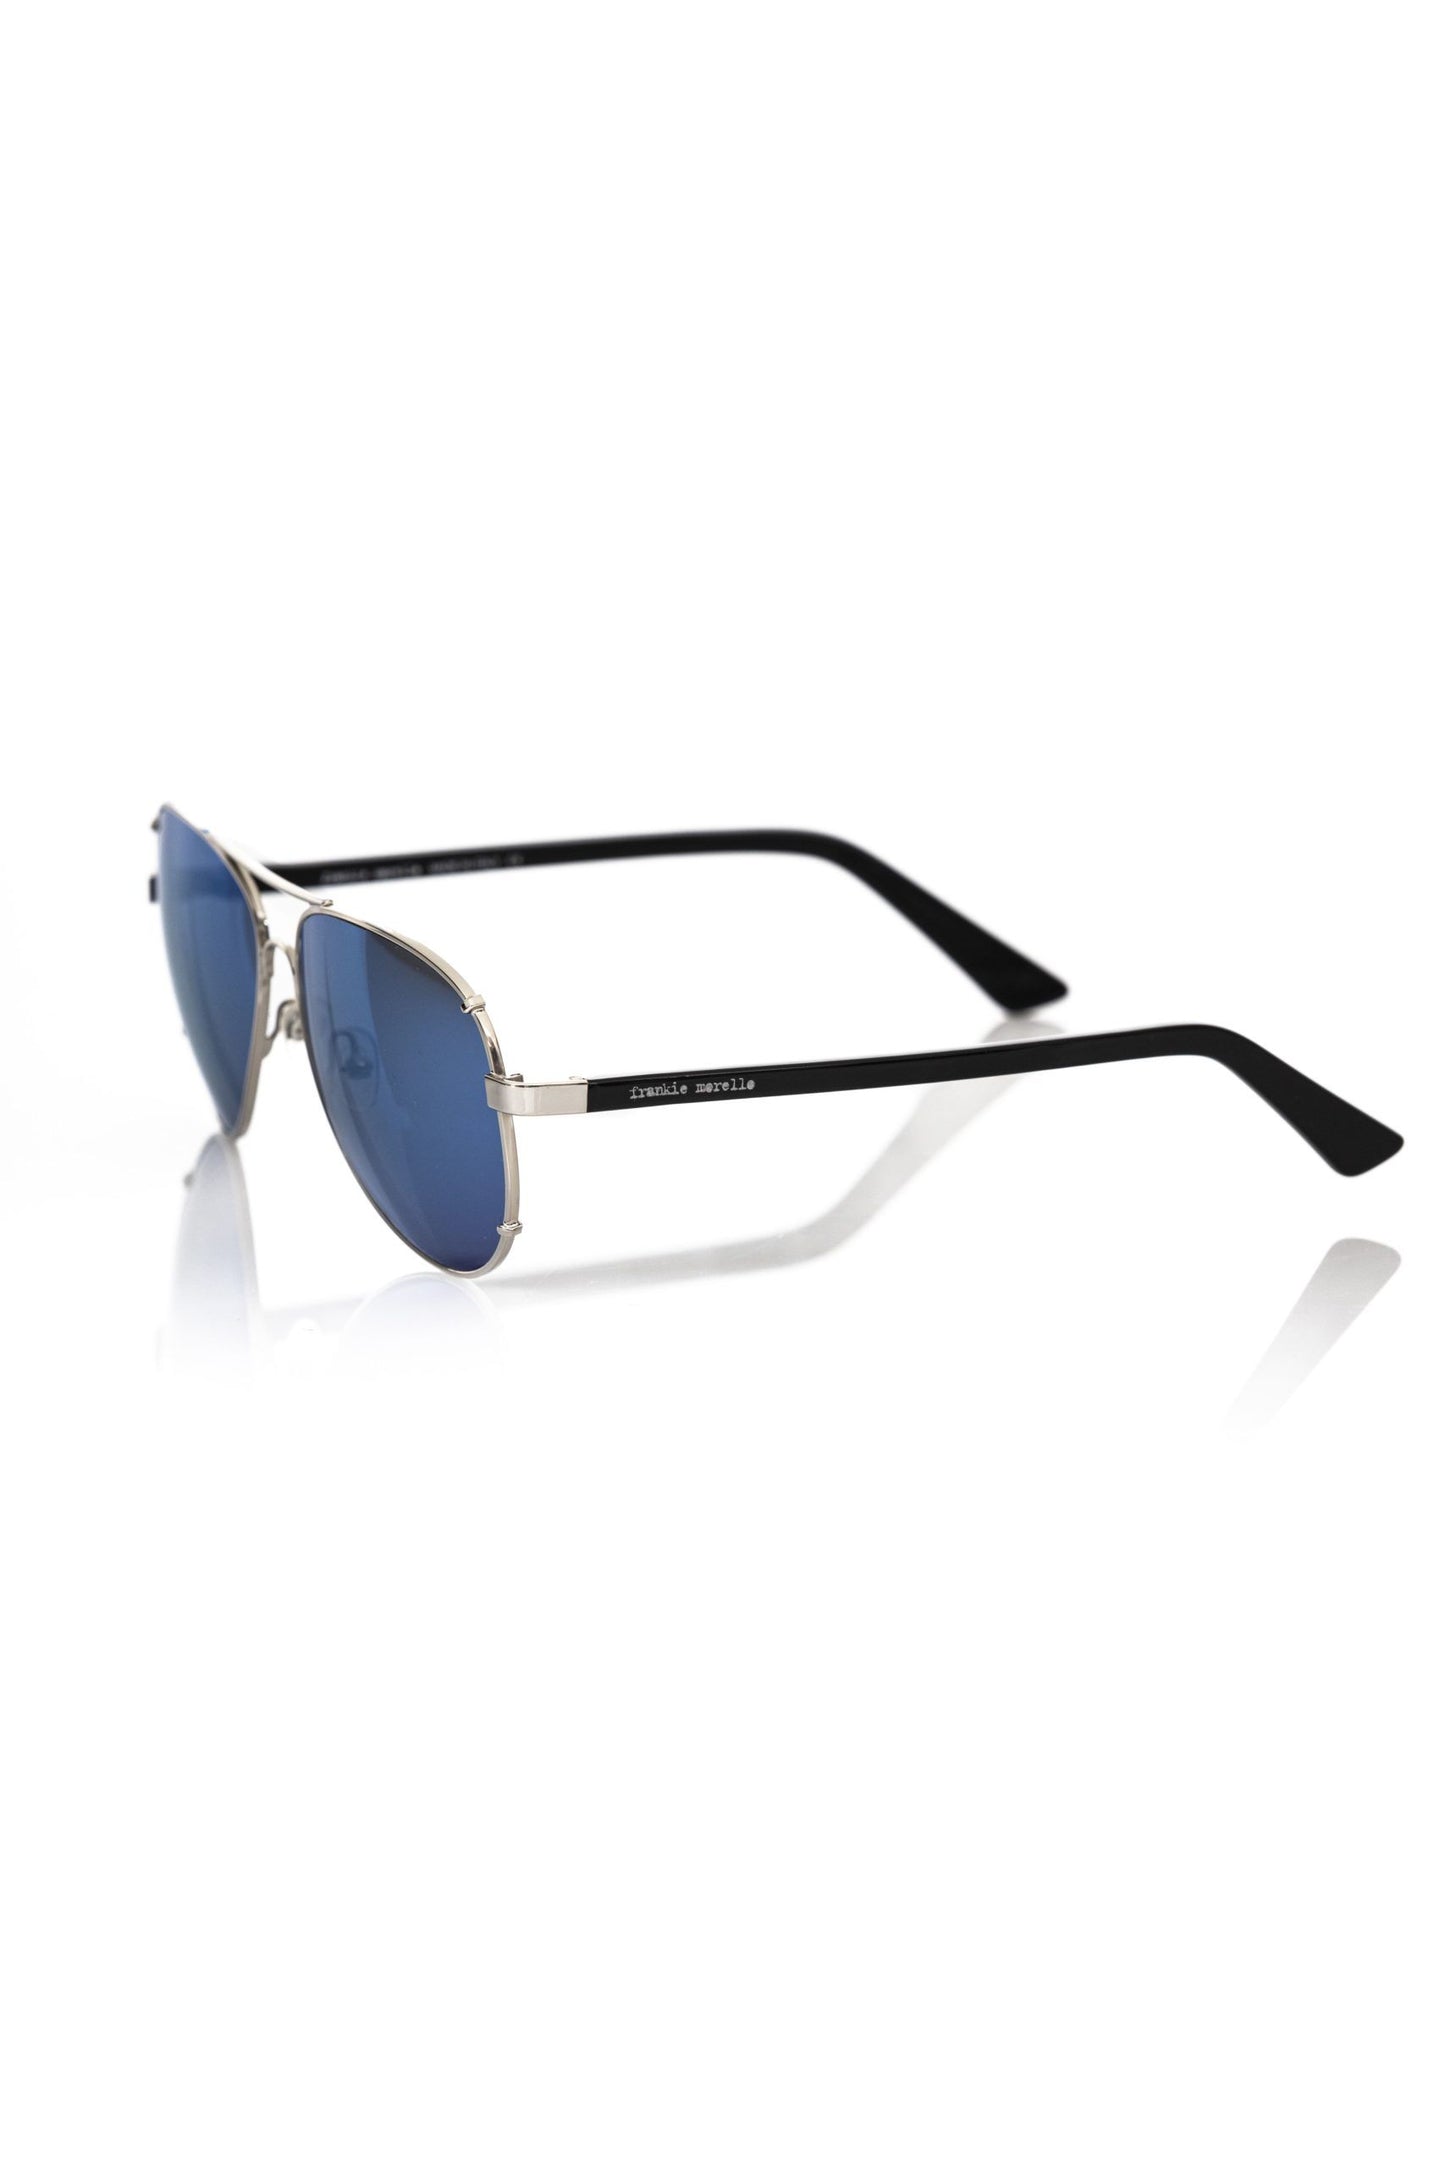 Frankie Morello Silver Metallic Fibre Sunglasses for man